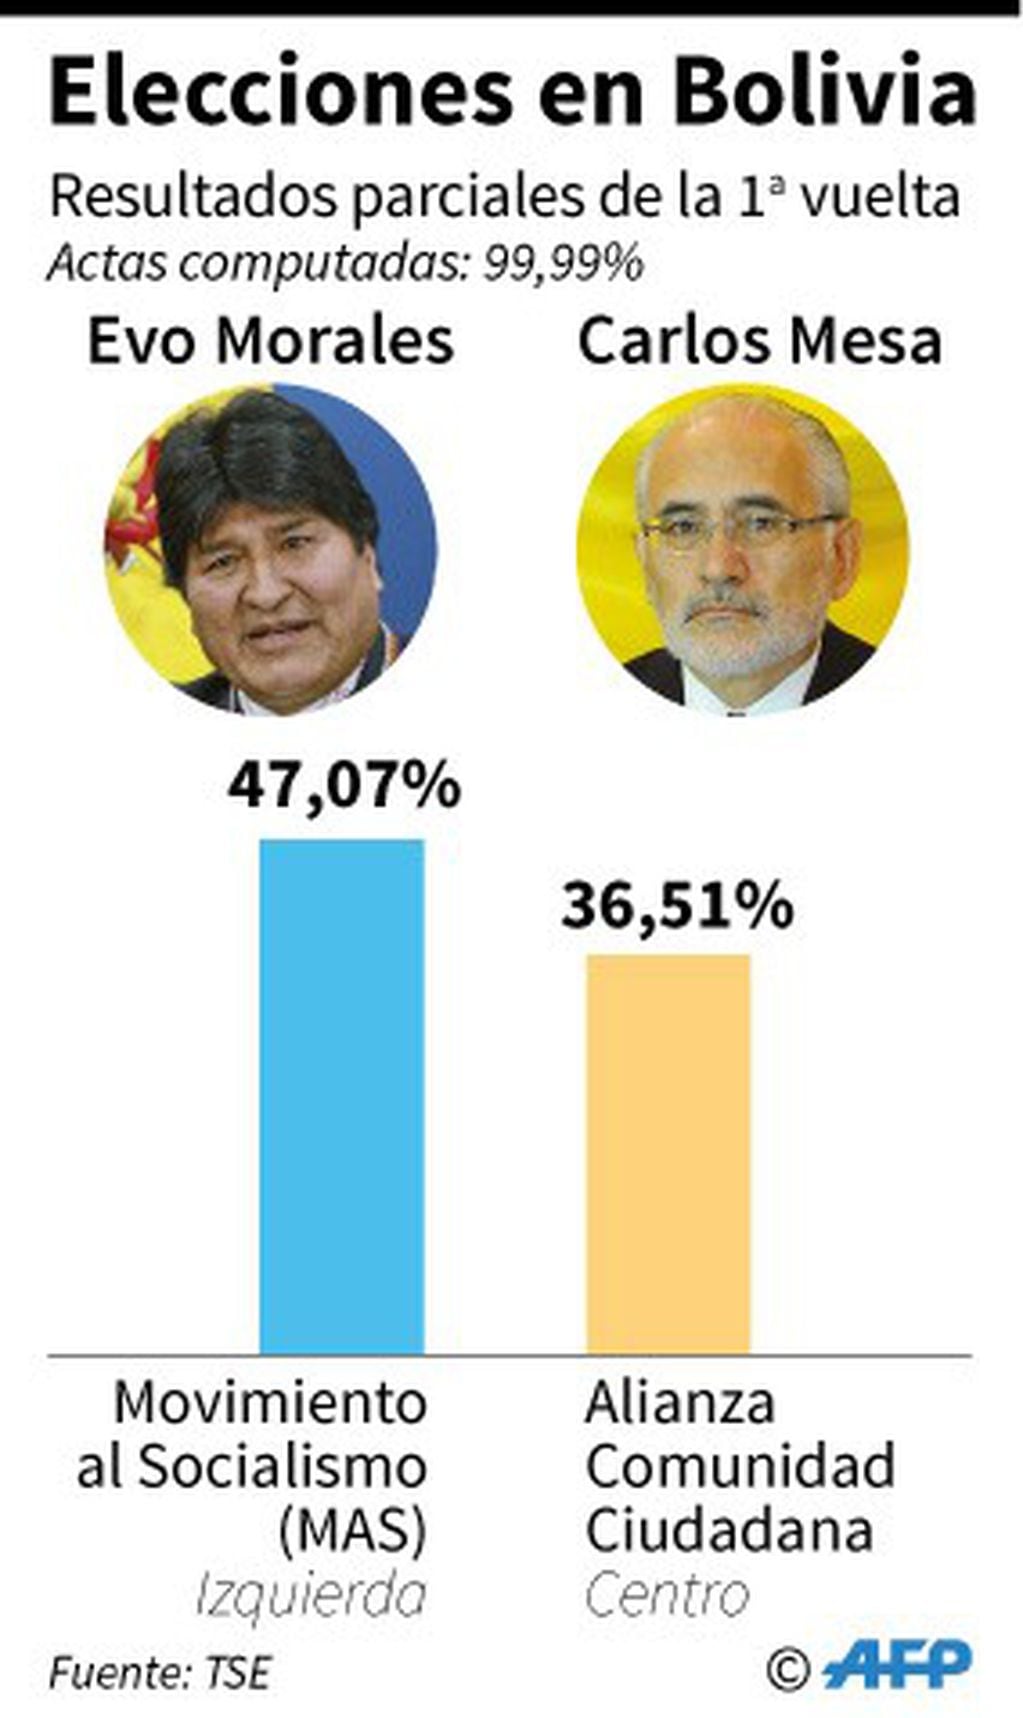 Resultados parciales de las elecciones presidenciales en Bolivia. Crédito: AFP / AFP